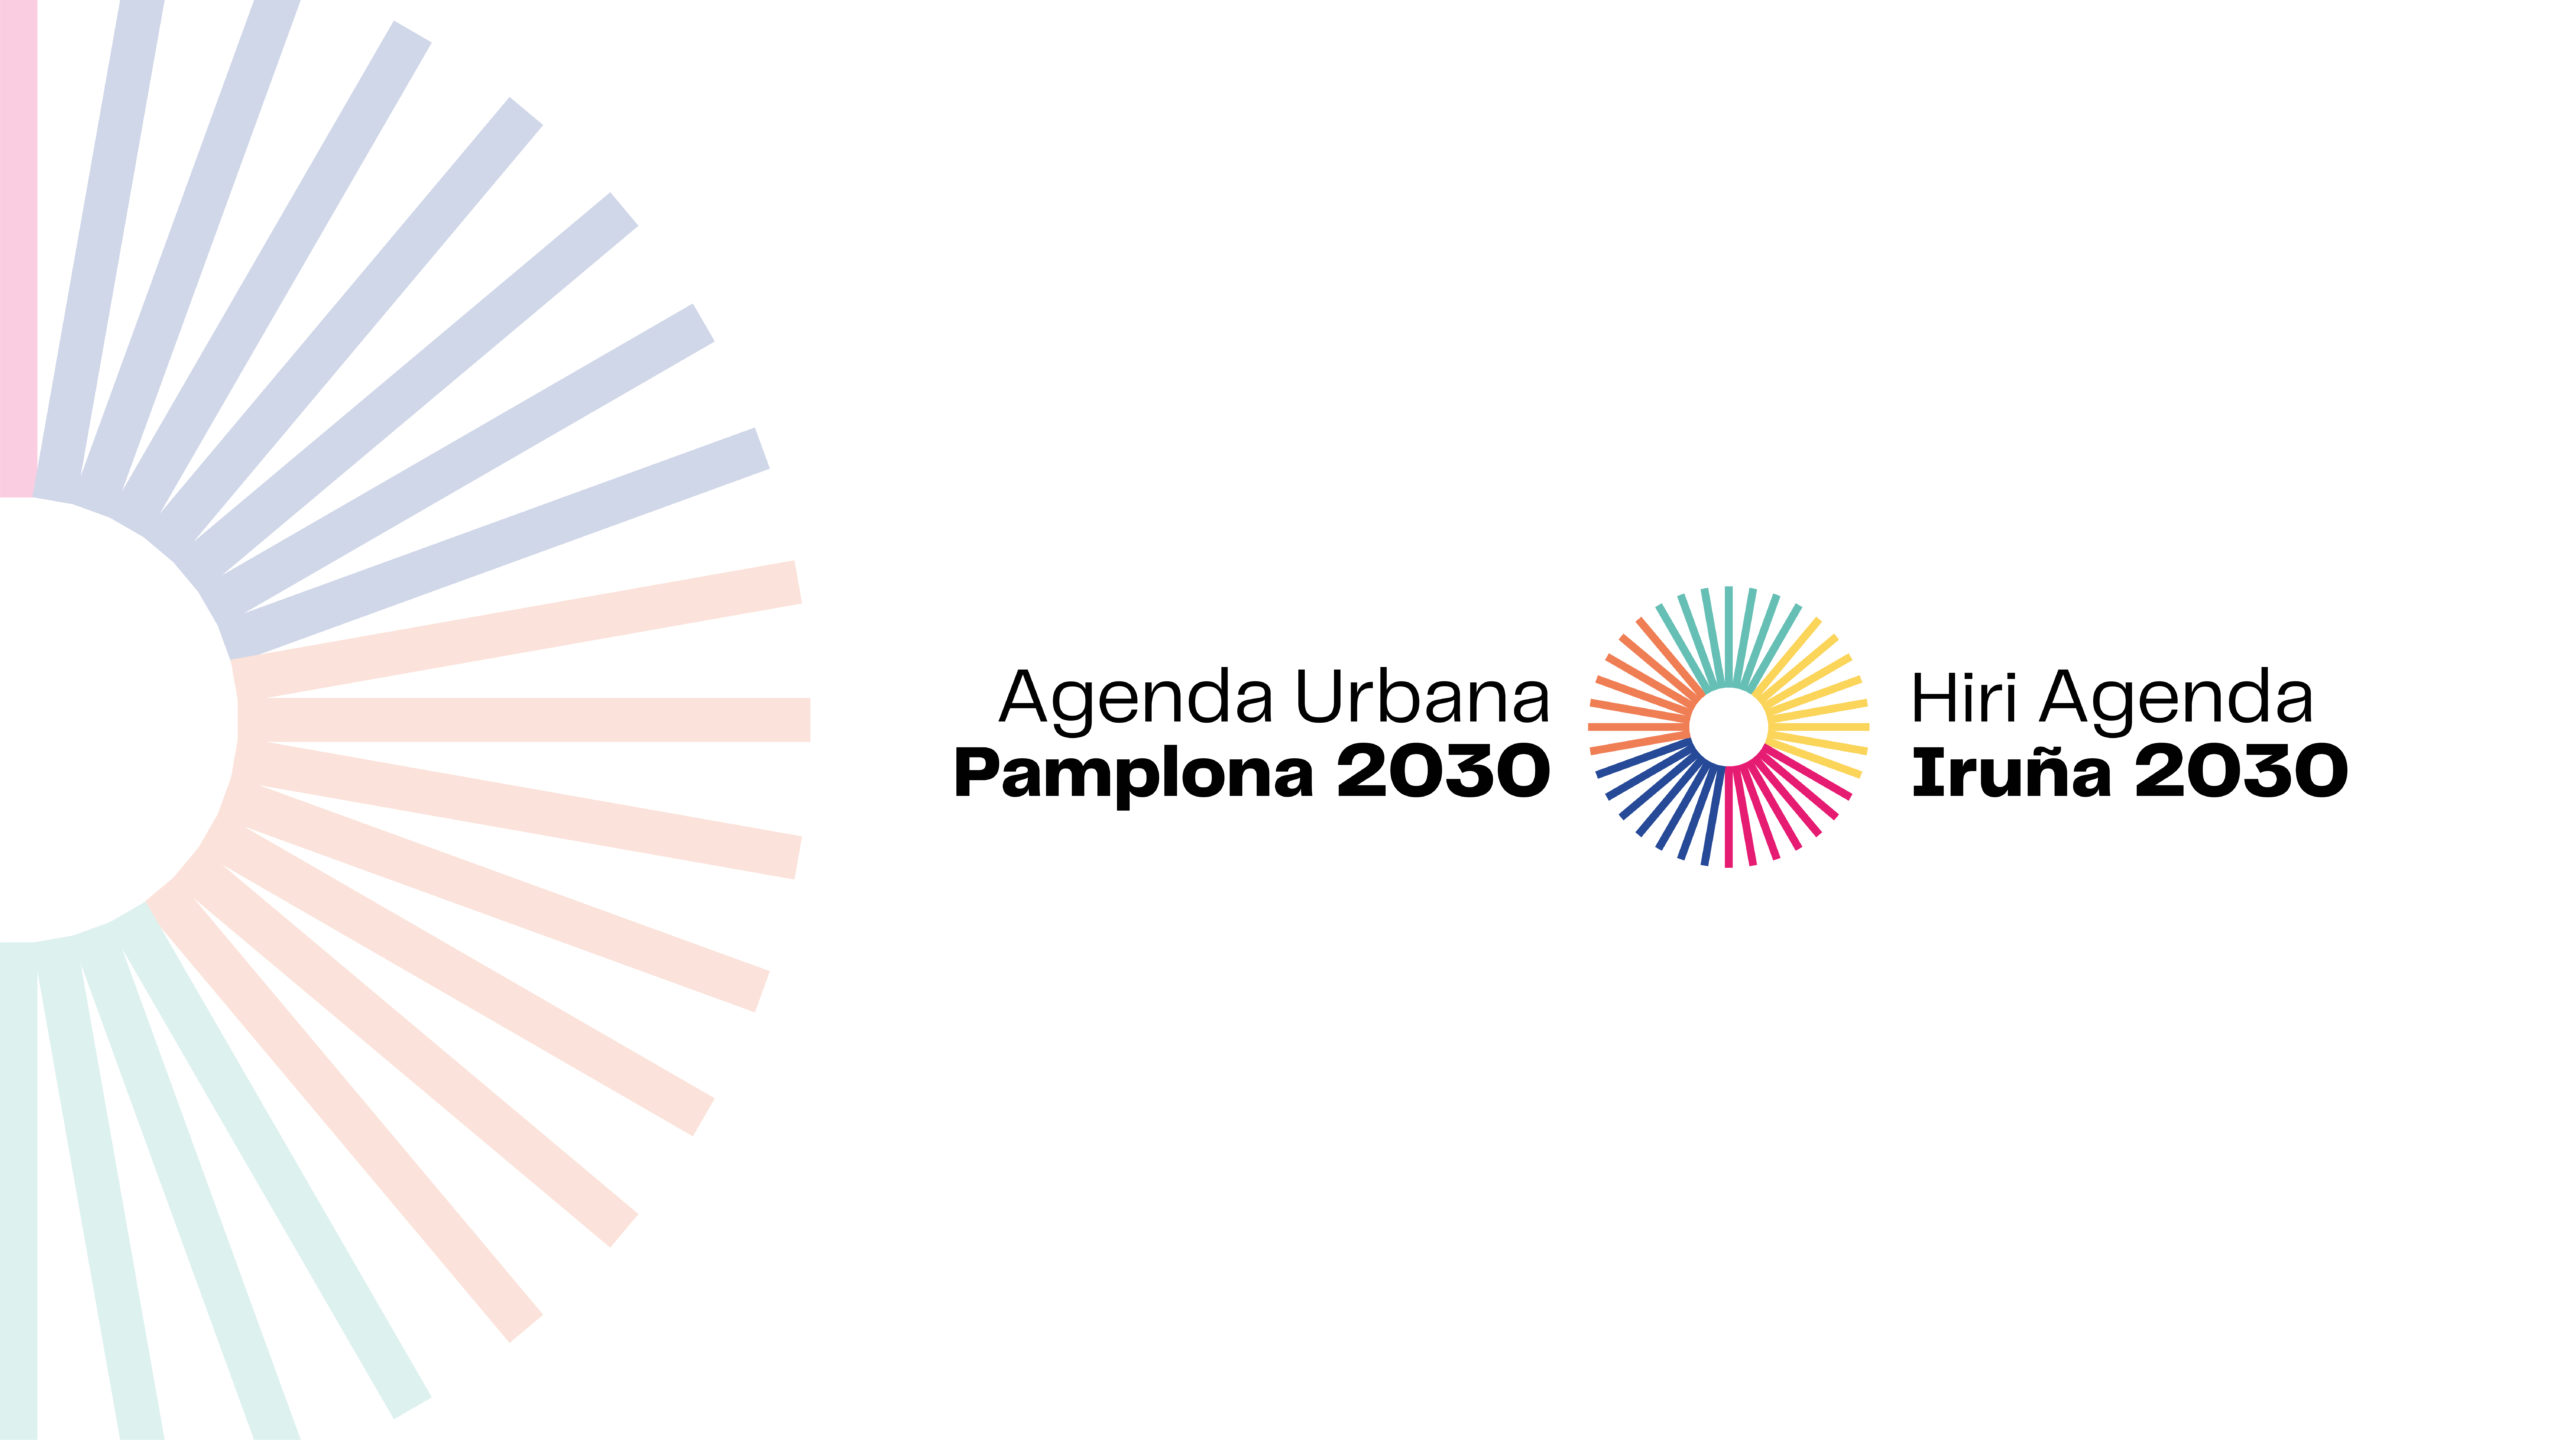 Pamplona dedica el mes de noviembre a difundir las actividades y valores de la Agenda Urbana de Pamplona 2030 para alcanzar los Objetivos de Desarrollo Sostenible